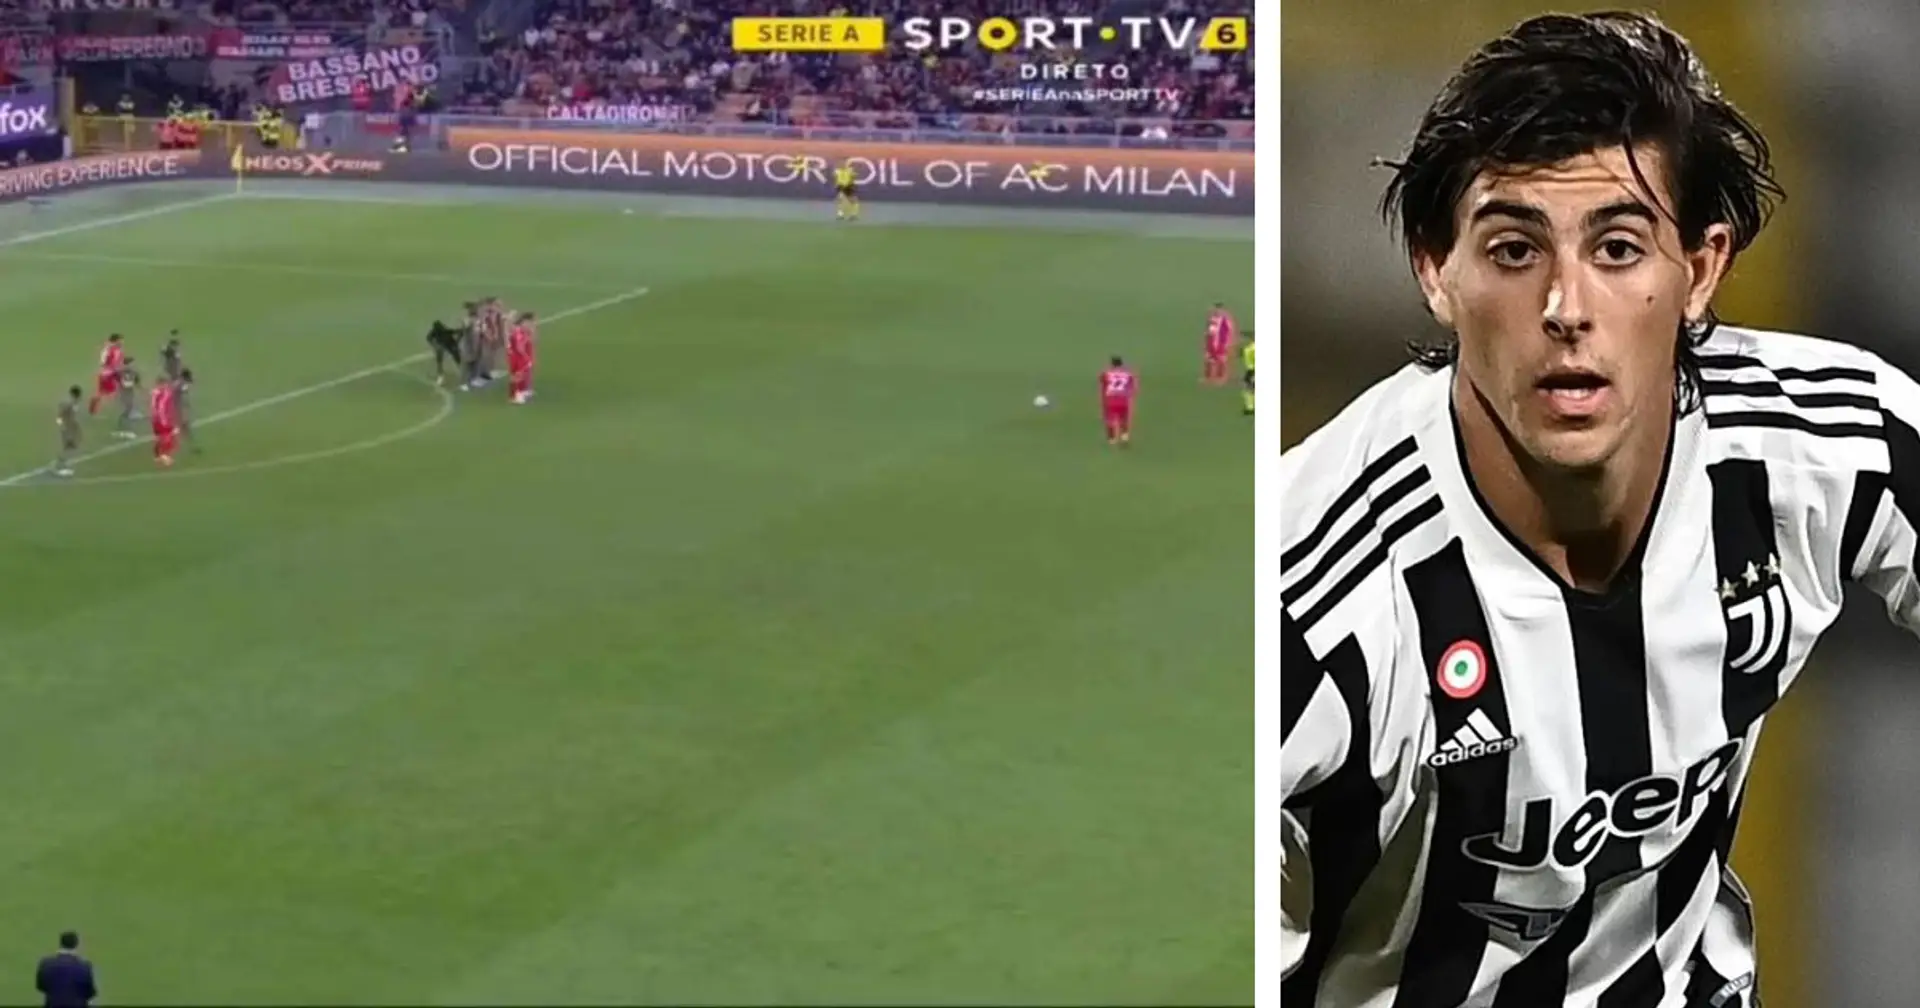 La punizione alla Del Piero del giovane bianconero Ranocchia contro il Milan fa brillare gli occhi ai tifosi